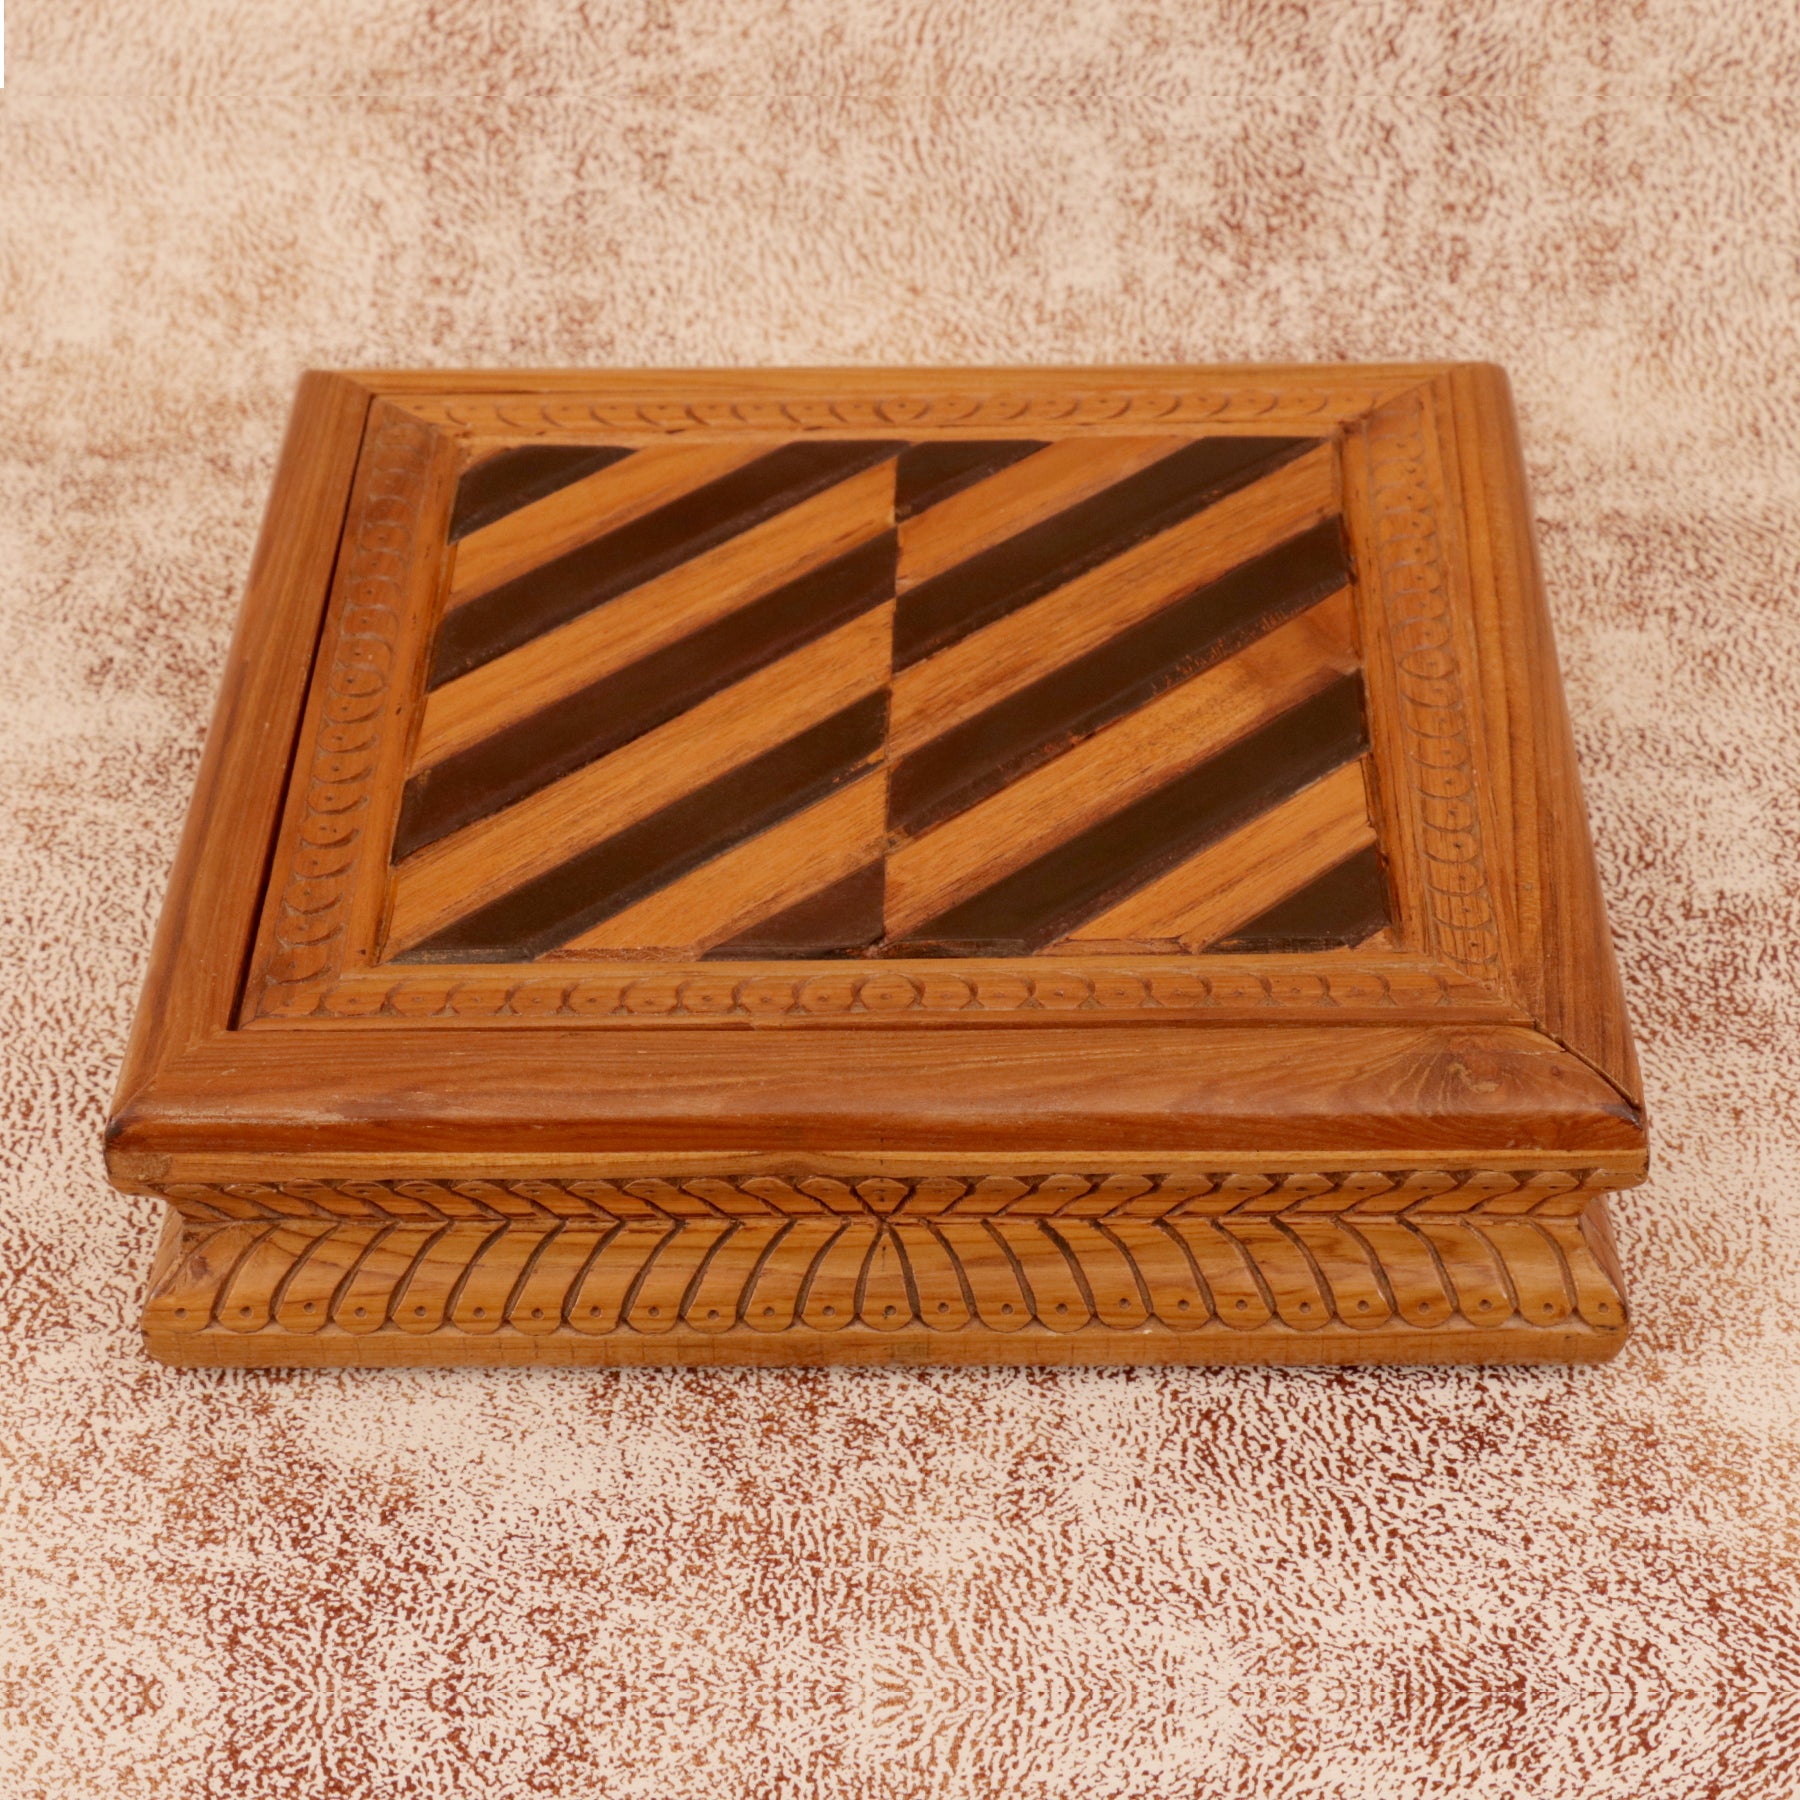 Striped Square Box Wooden Box